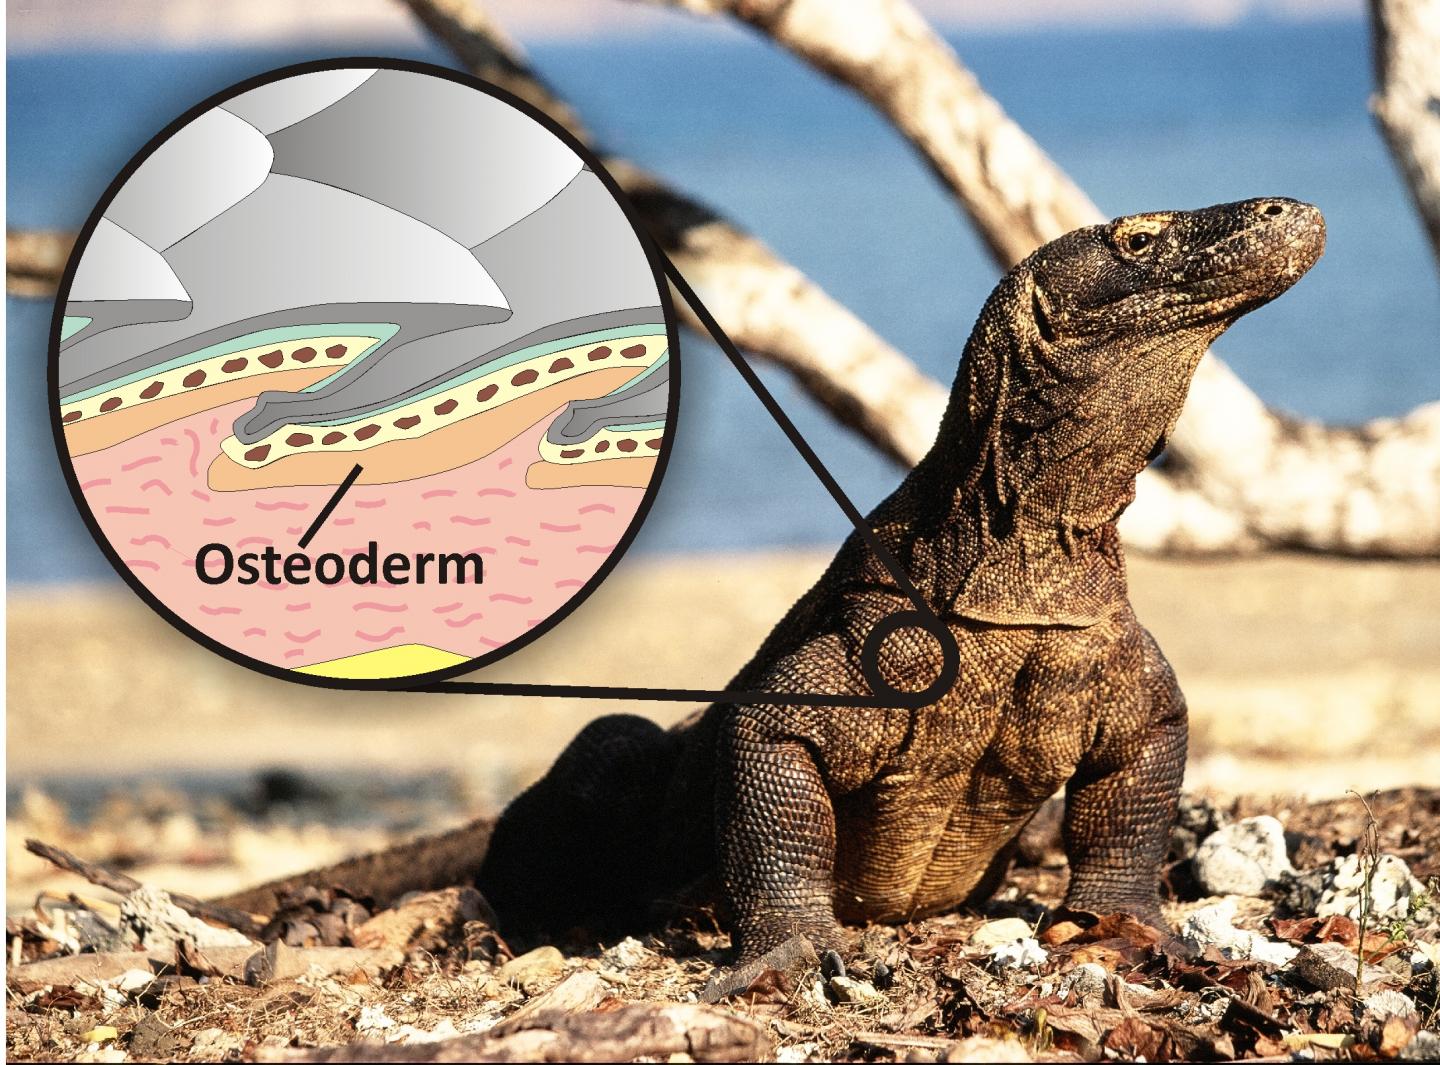 Giant Killer Lizard Fossil Shines New Light on Early Australians (2 of 2)